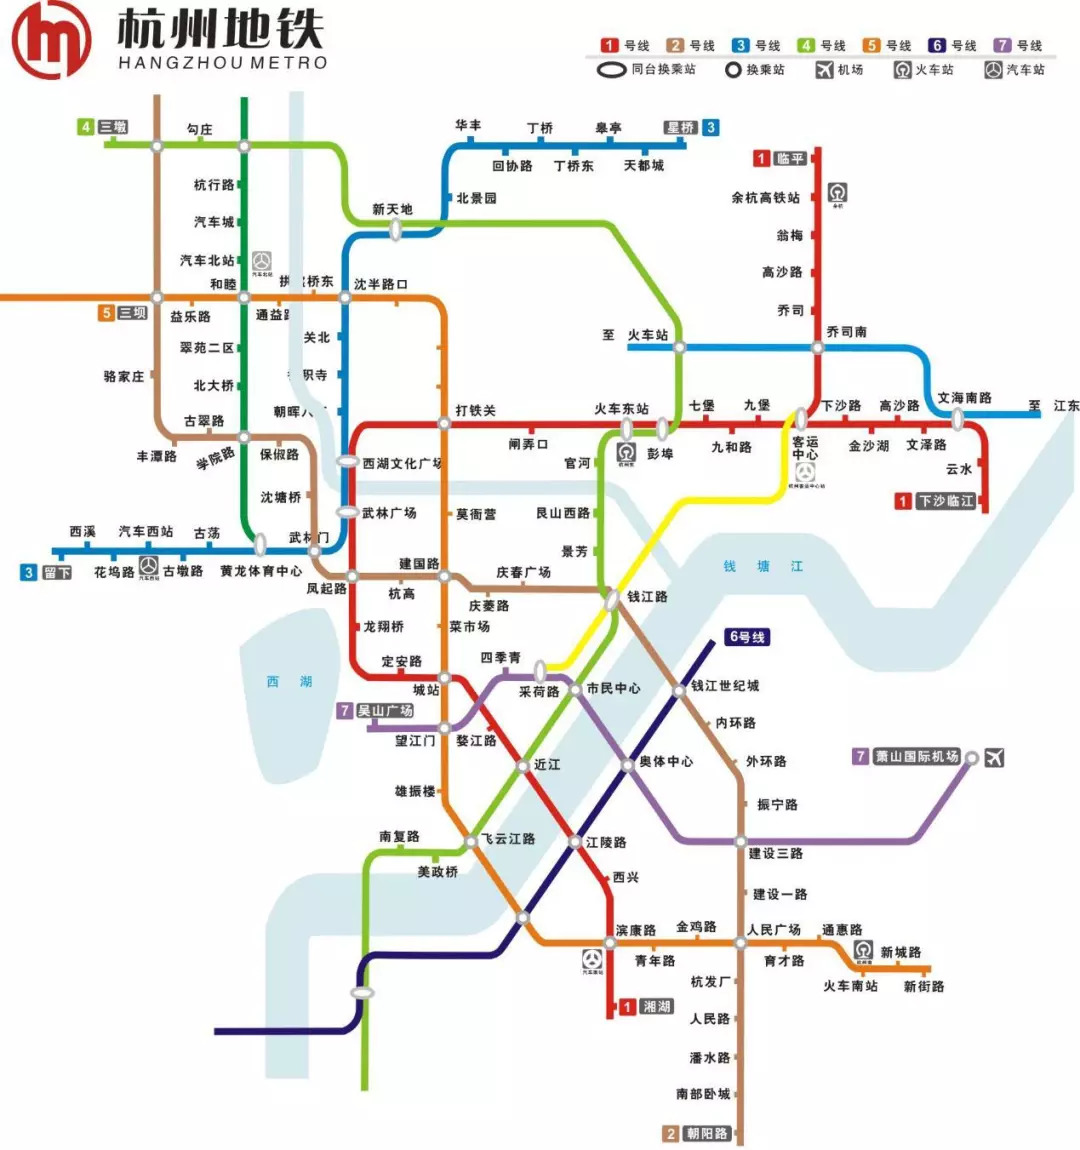 杭州地铁首条线路1号线正式开通 截至2018年1月,杭州地铁运营线路共3